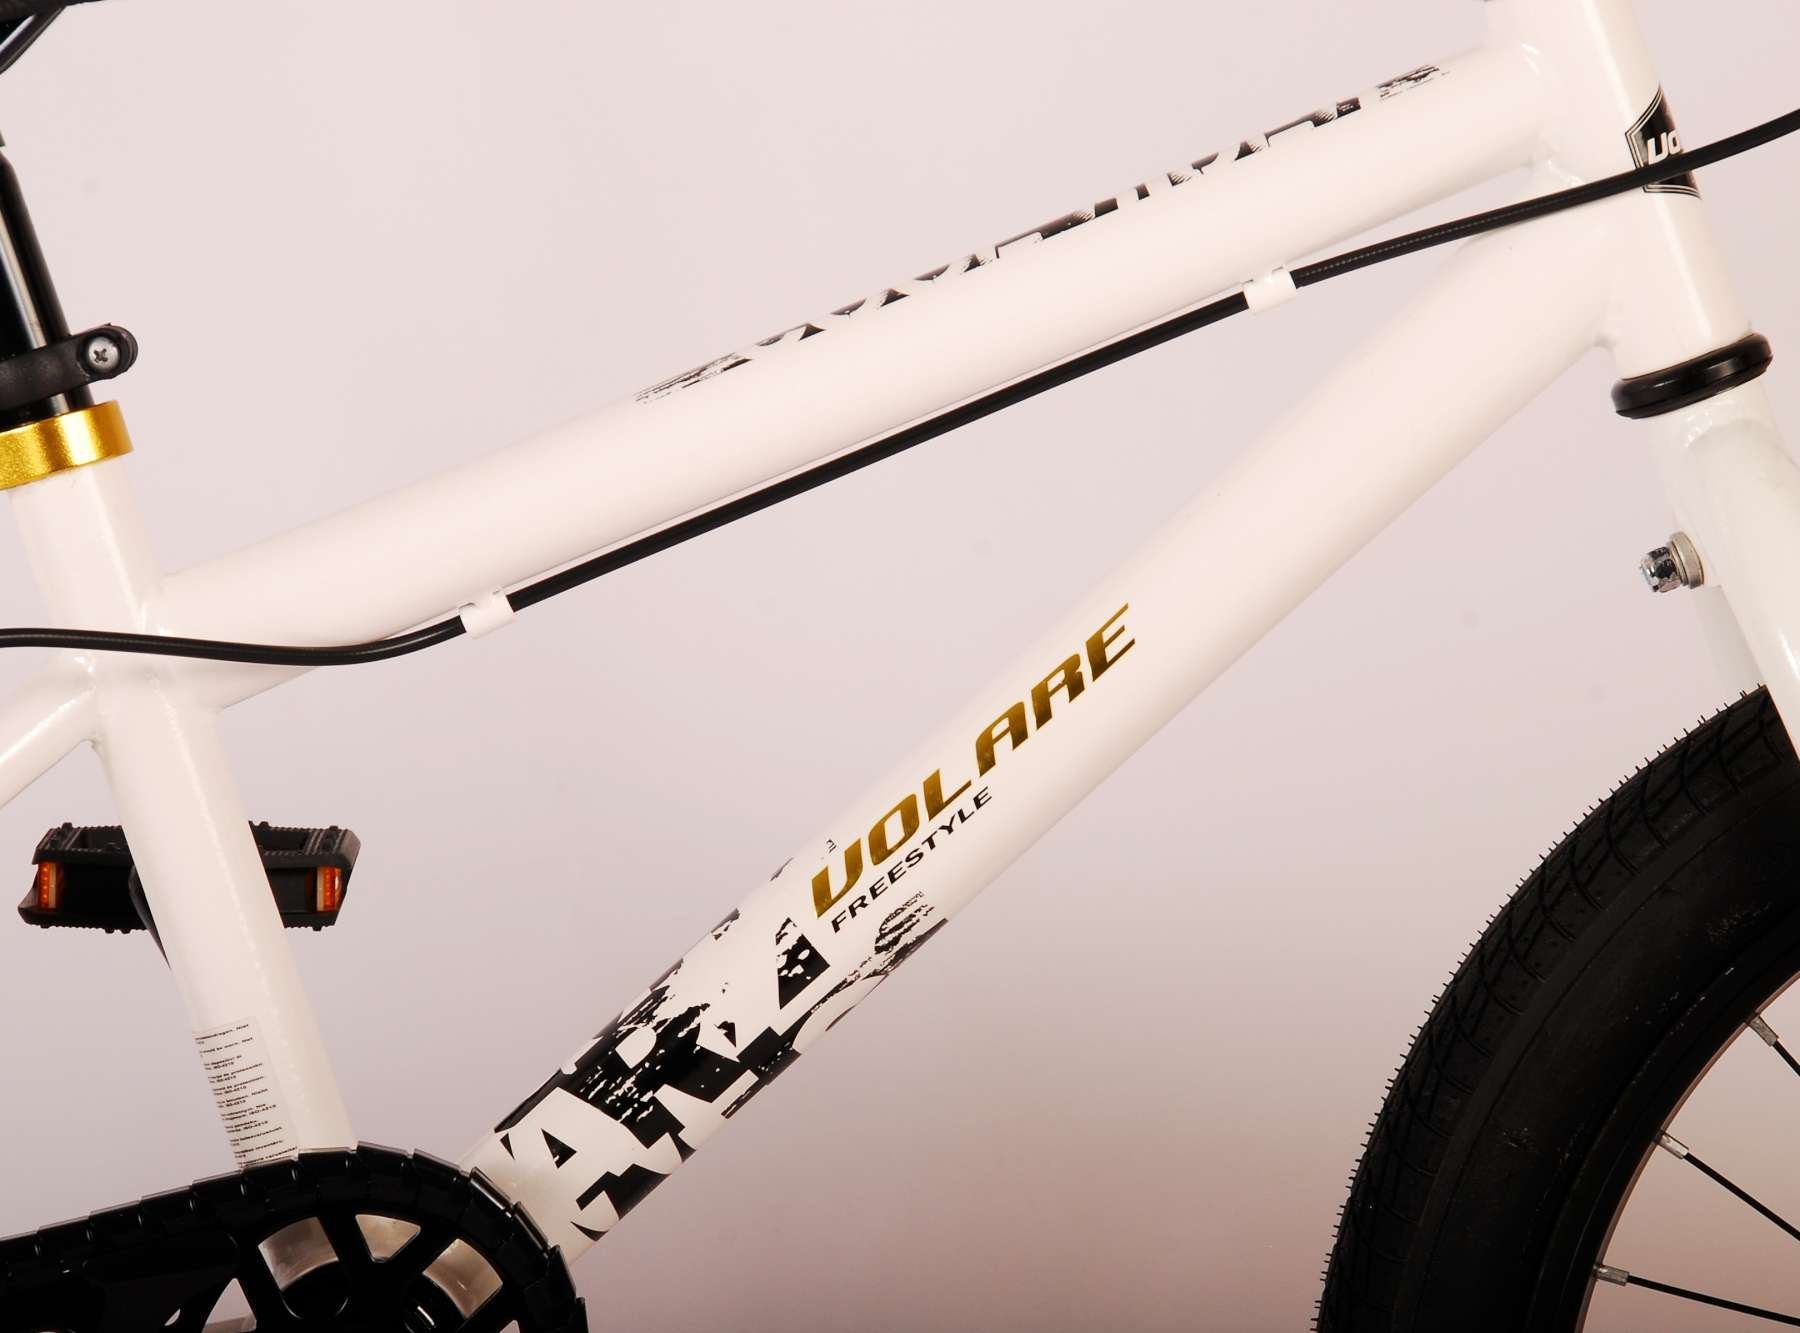 Volare Cool Rider BMX 18-Zoll-Rad für Jungen kaufen?